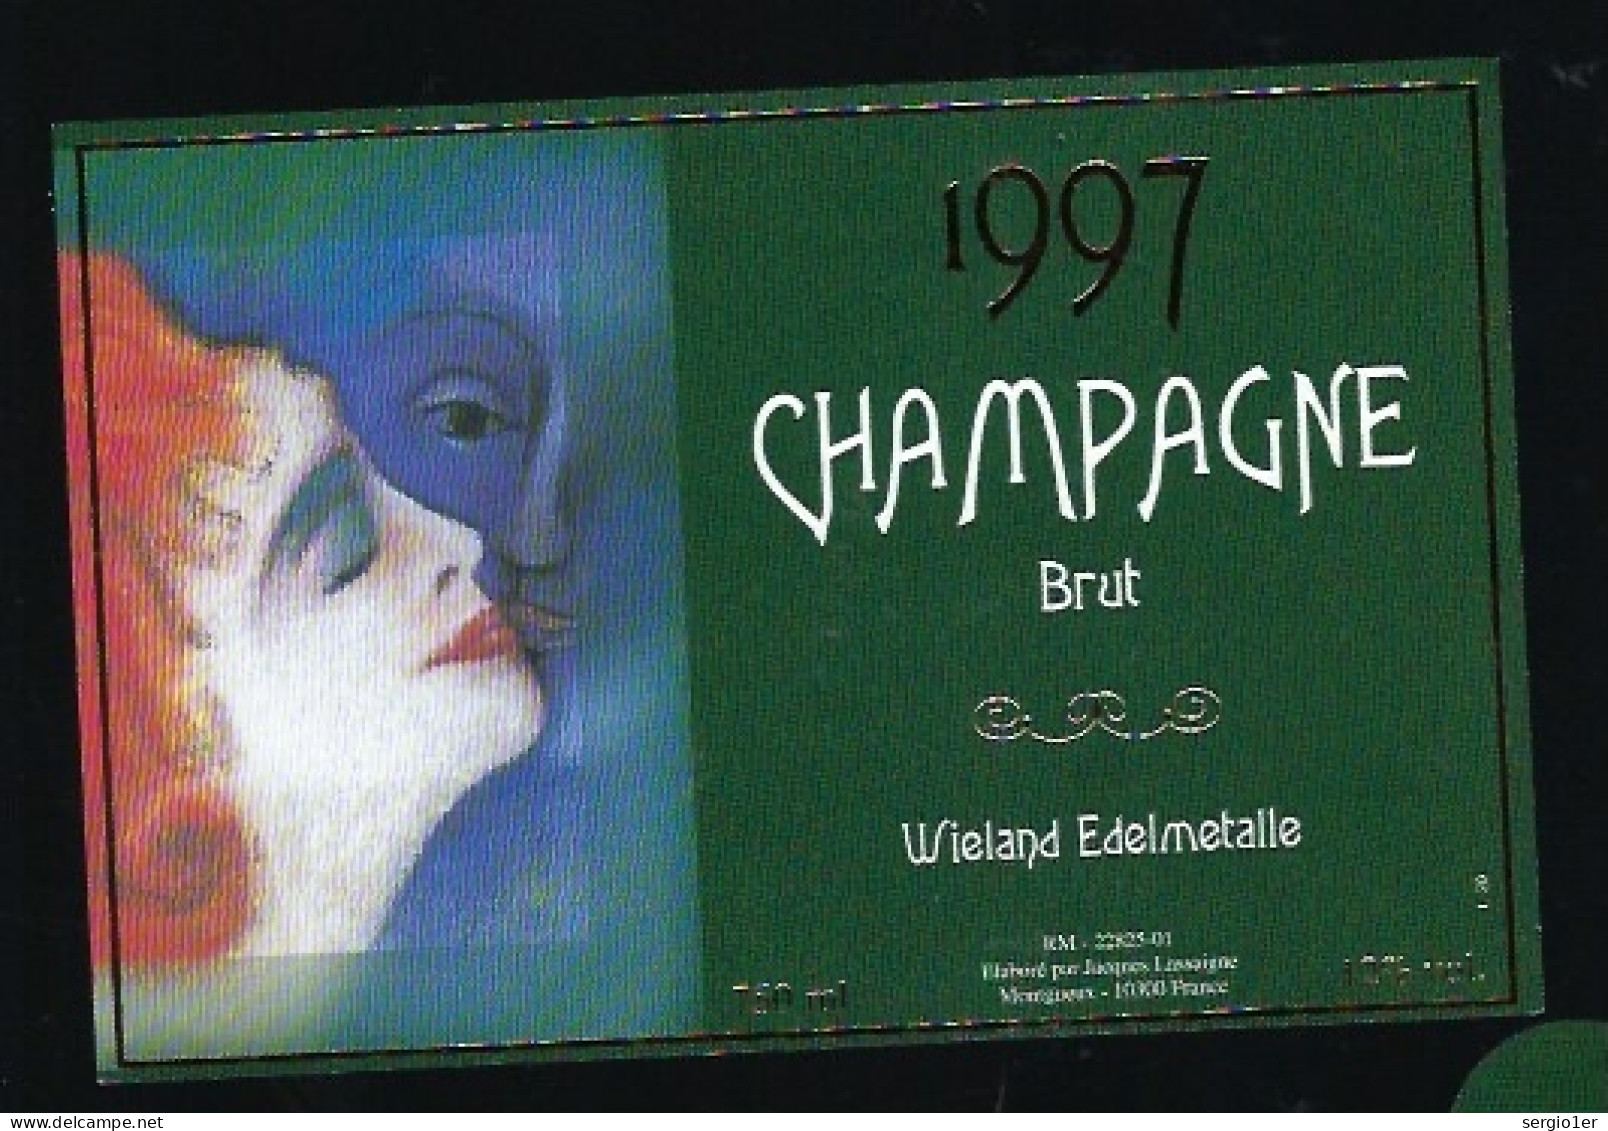 Etiquette Champagne Brut Millésime 1997 Wieland Edelmetalle  Jacques Lassaigne Montgueux Aube 10    " Femme" - Champagne